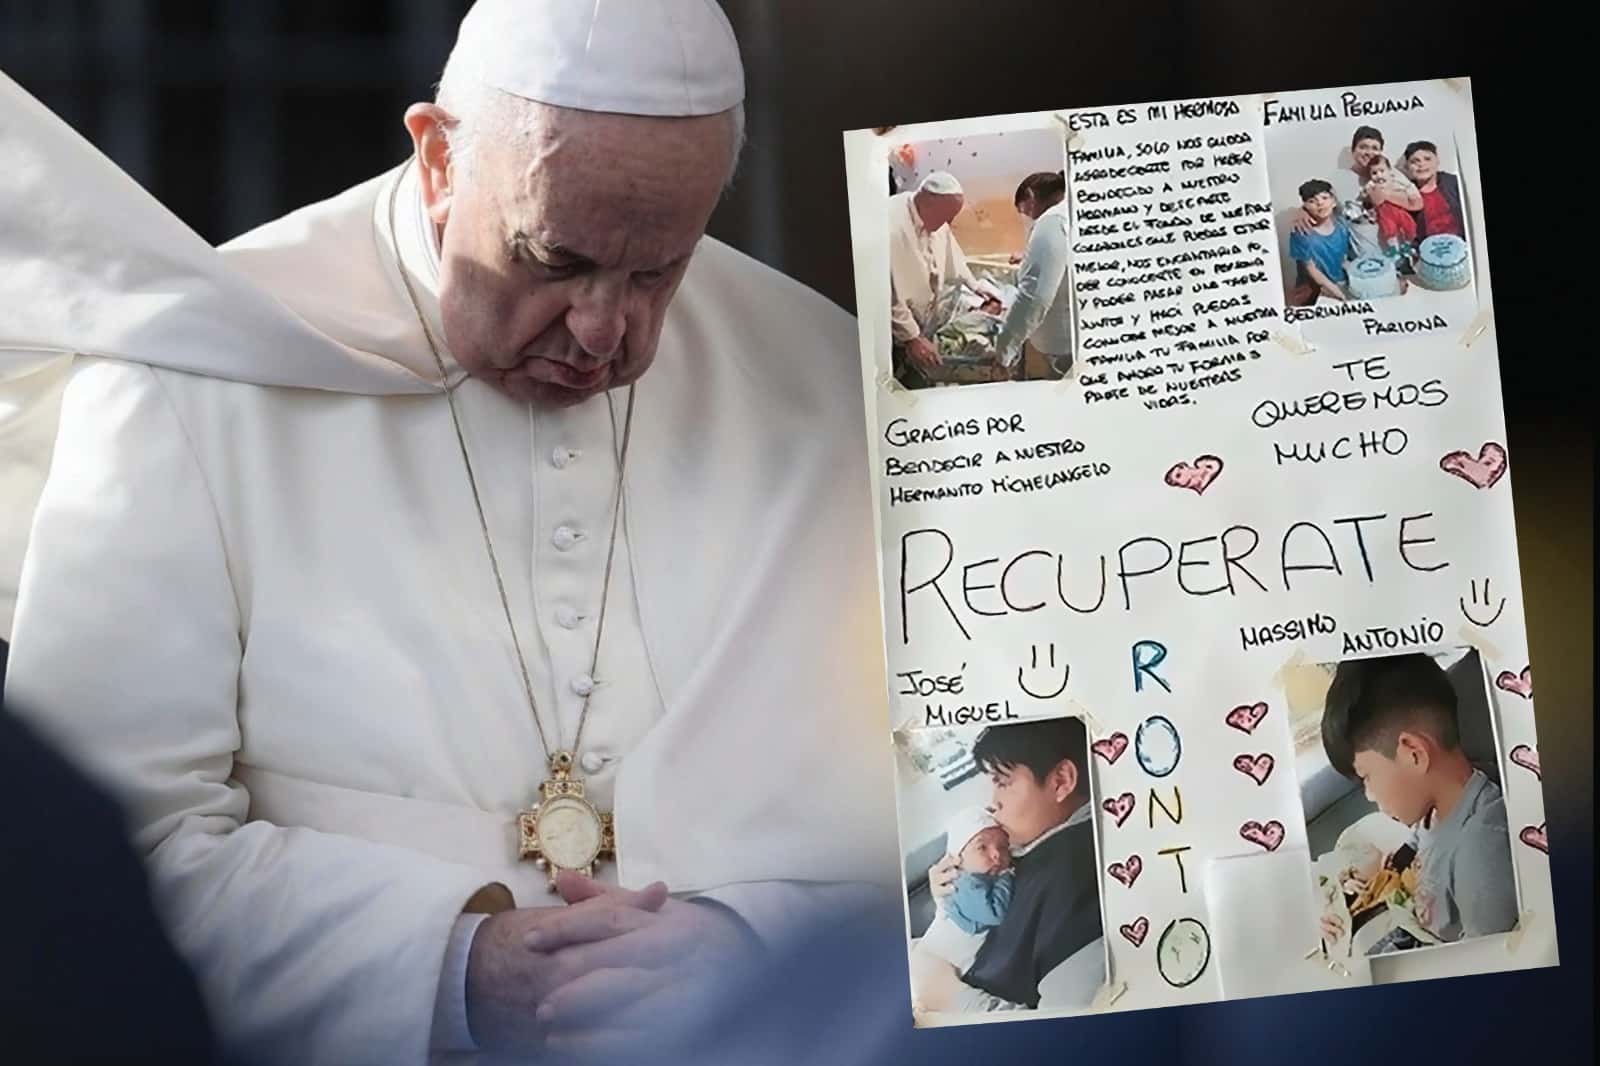 La historia detrás del cartel que conmovió al Papa Francisco en el hospital